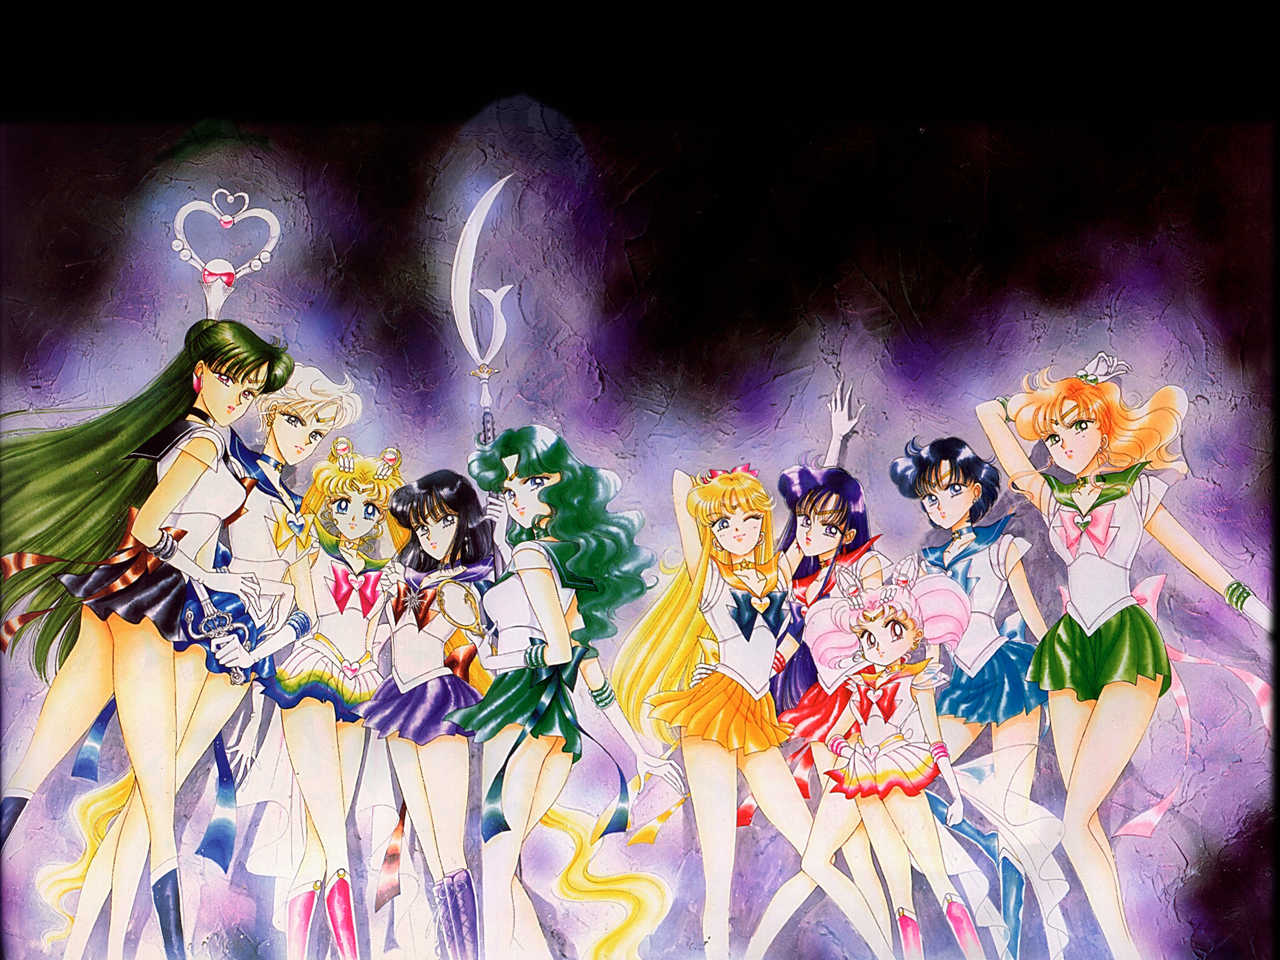 美少女戦士セーラームーン Sailor Moon のネタバレ解説まとめ